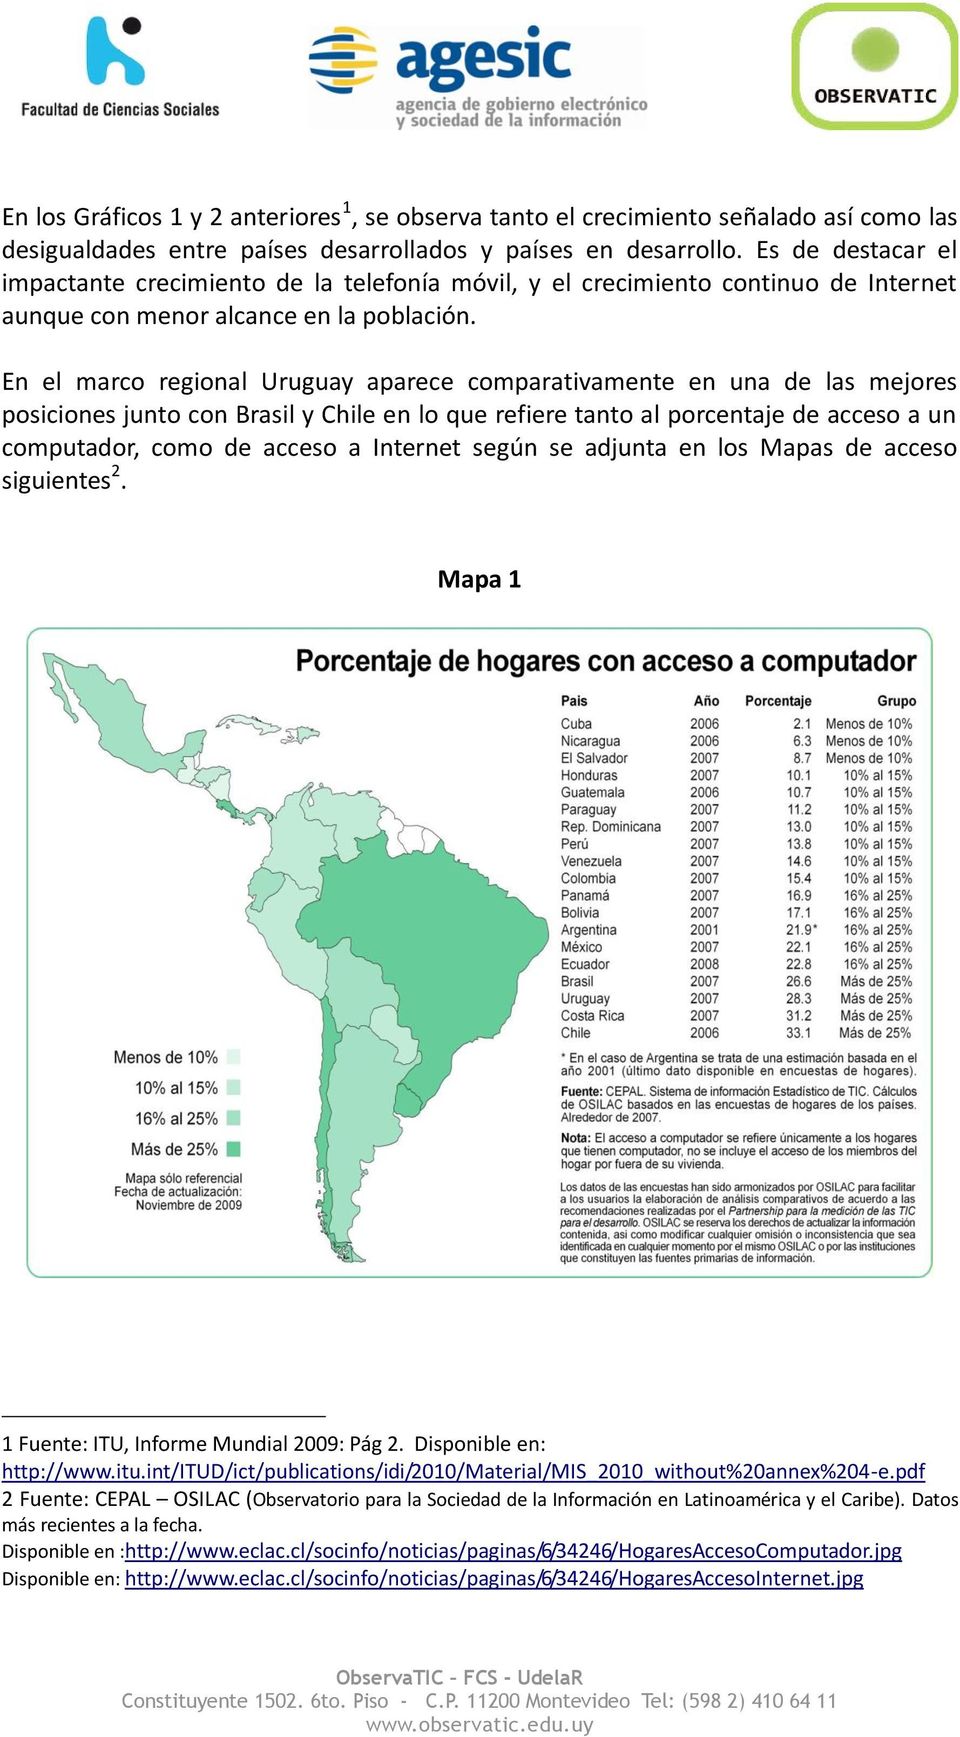 En el marco regional Uruguay aparece comparativamente en una de las mejores posiciones junto con Brasil y Chile en lo que refiere tanto al porcentaje de acceso a un computador, como de acceso a